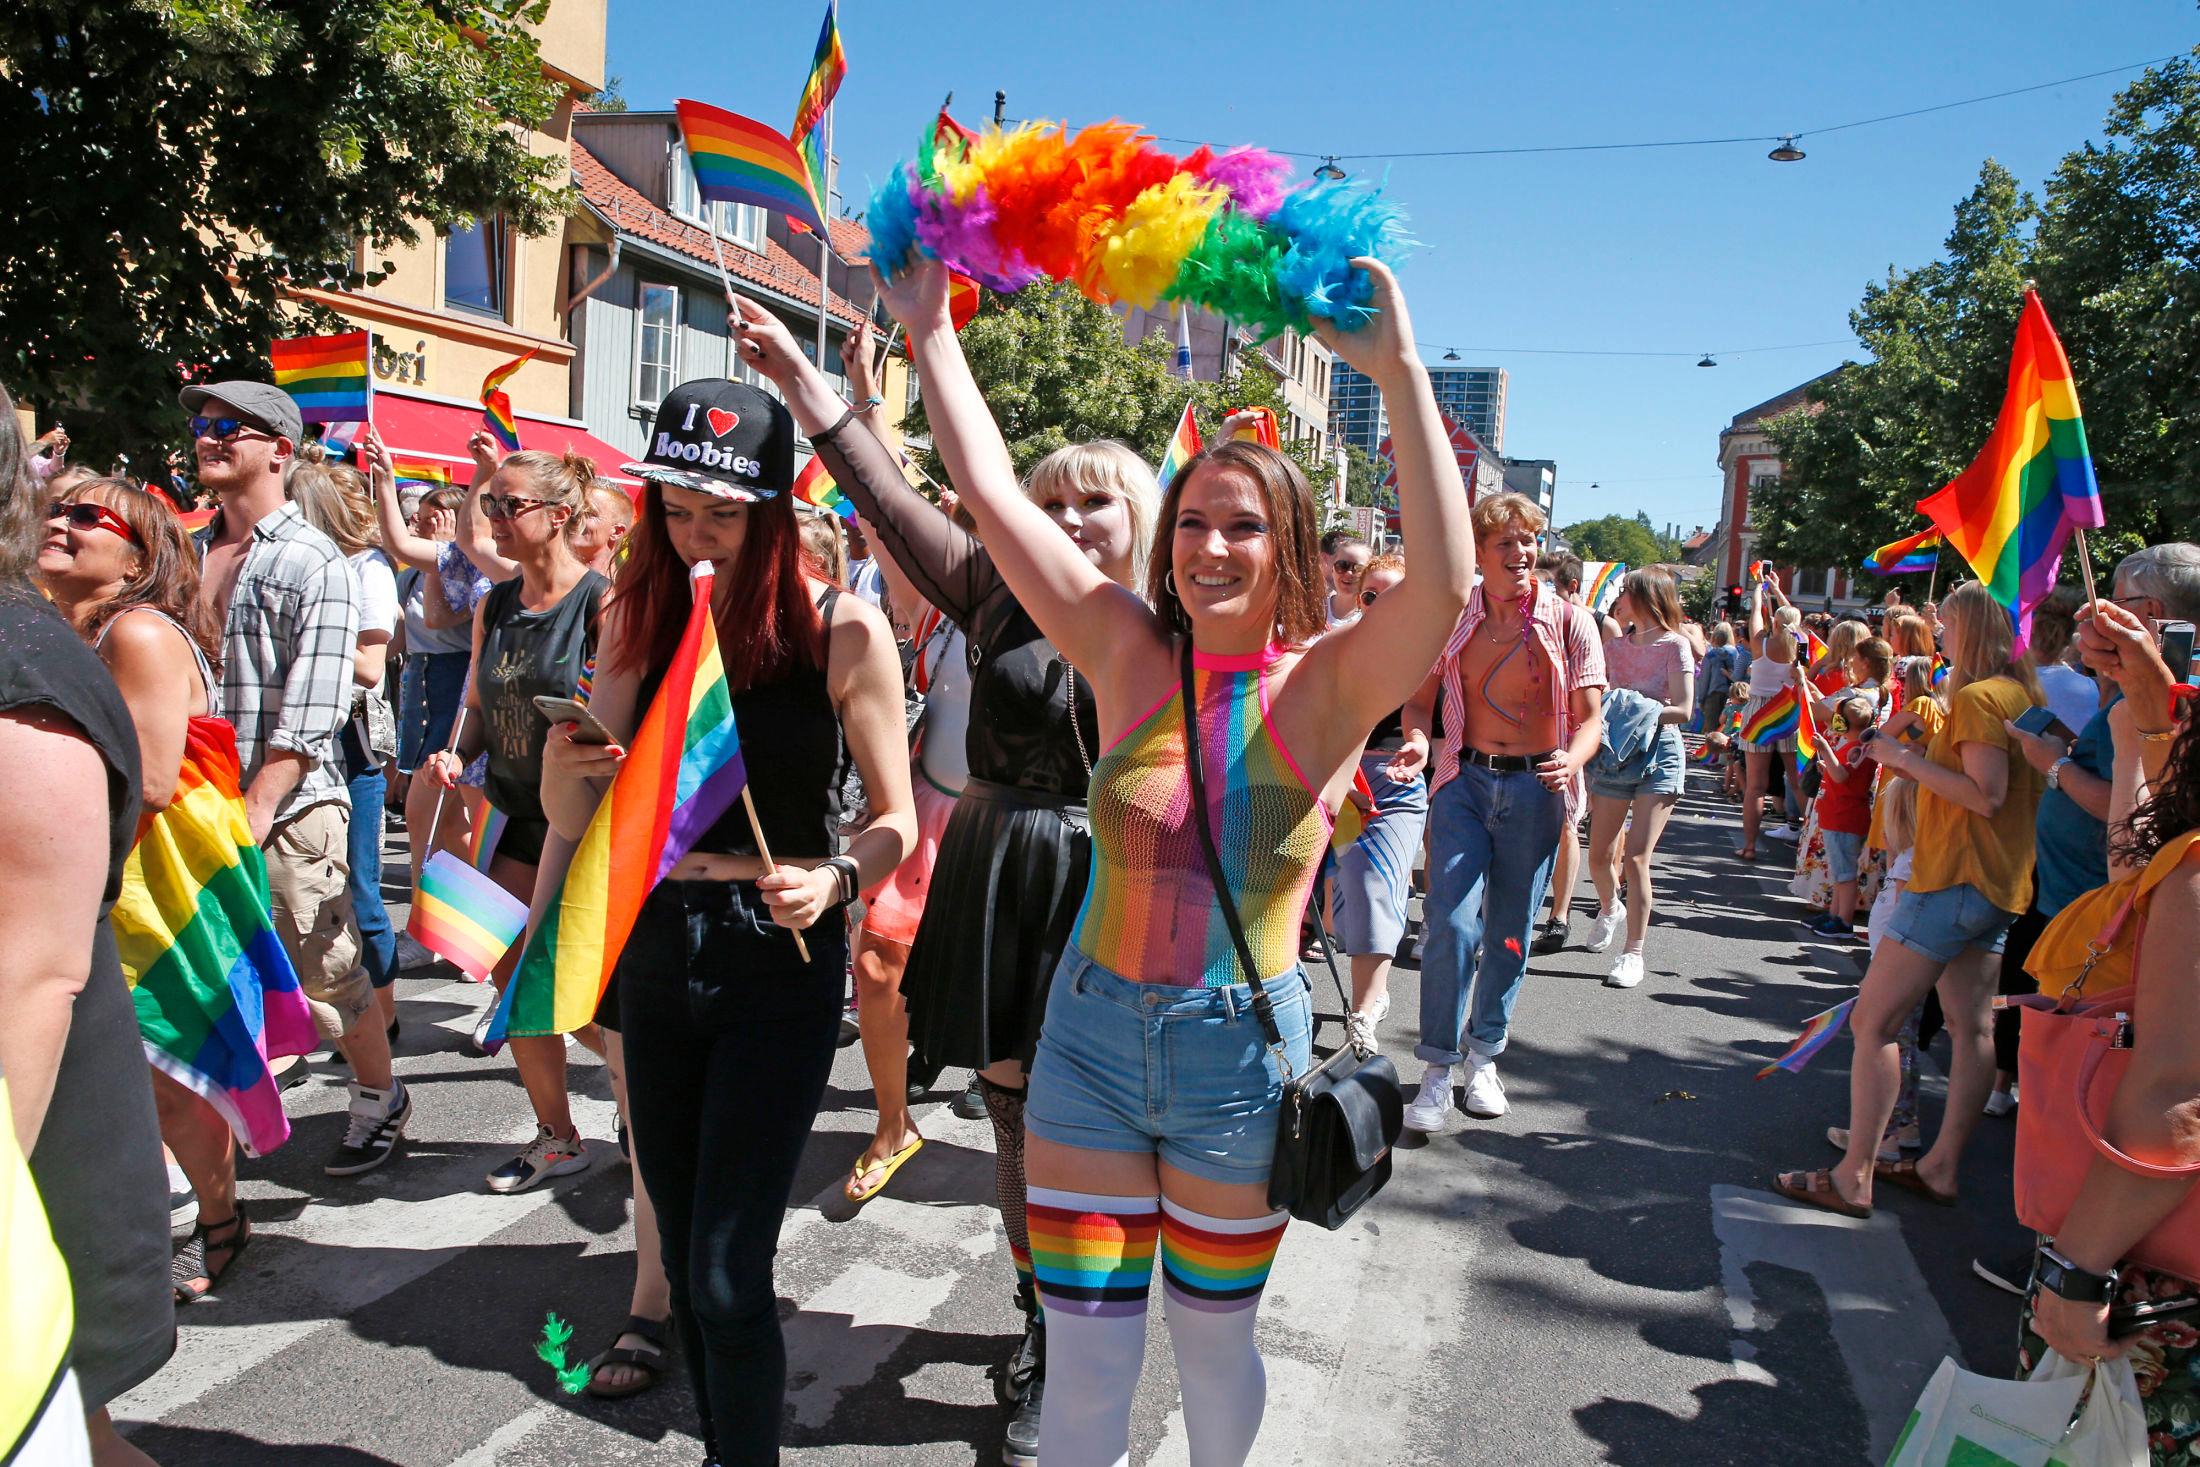 GLEDESSPREDER: Jessica Wall (28) er tydelig inspirert av regnbuens farger under årets Pride.
Foto: TROND SOLBERG, VG